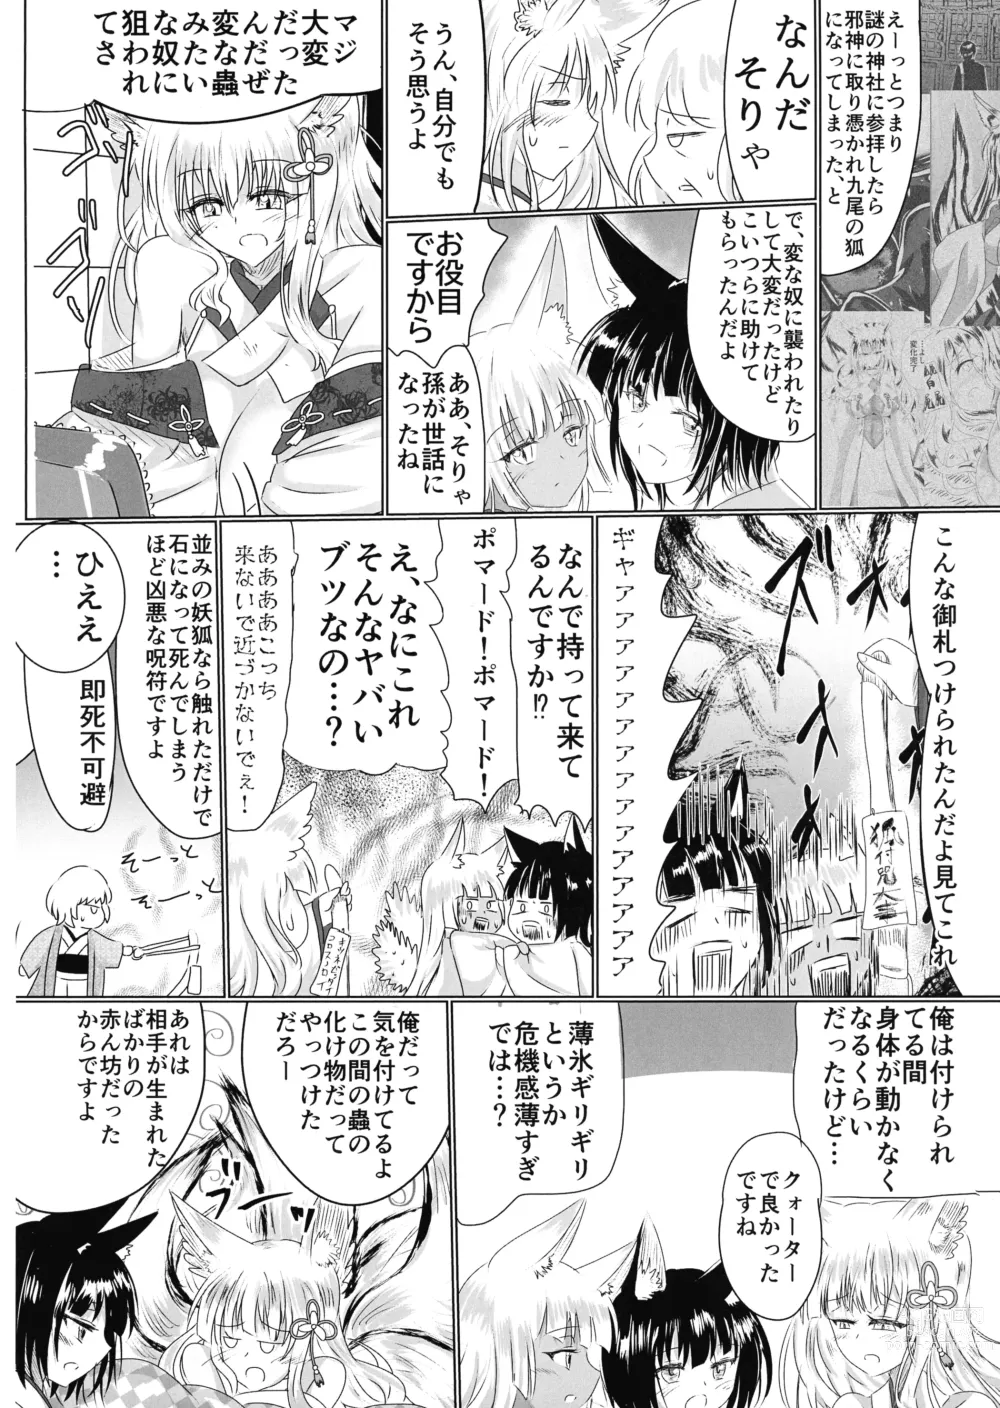 Page 11 of doujinshi Hako Tenjin